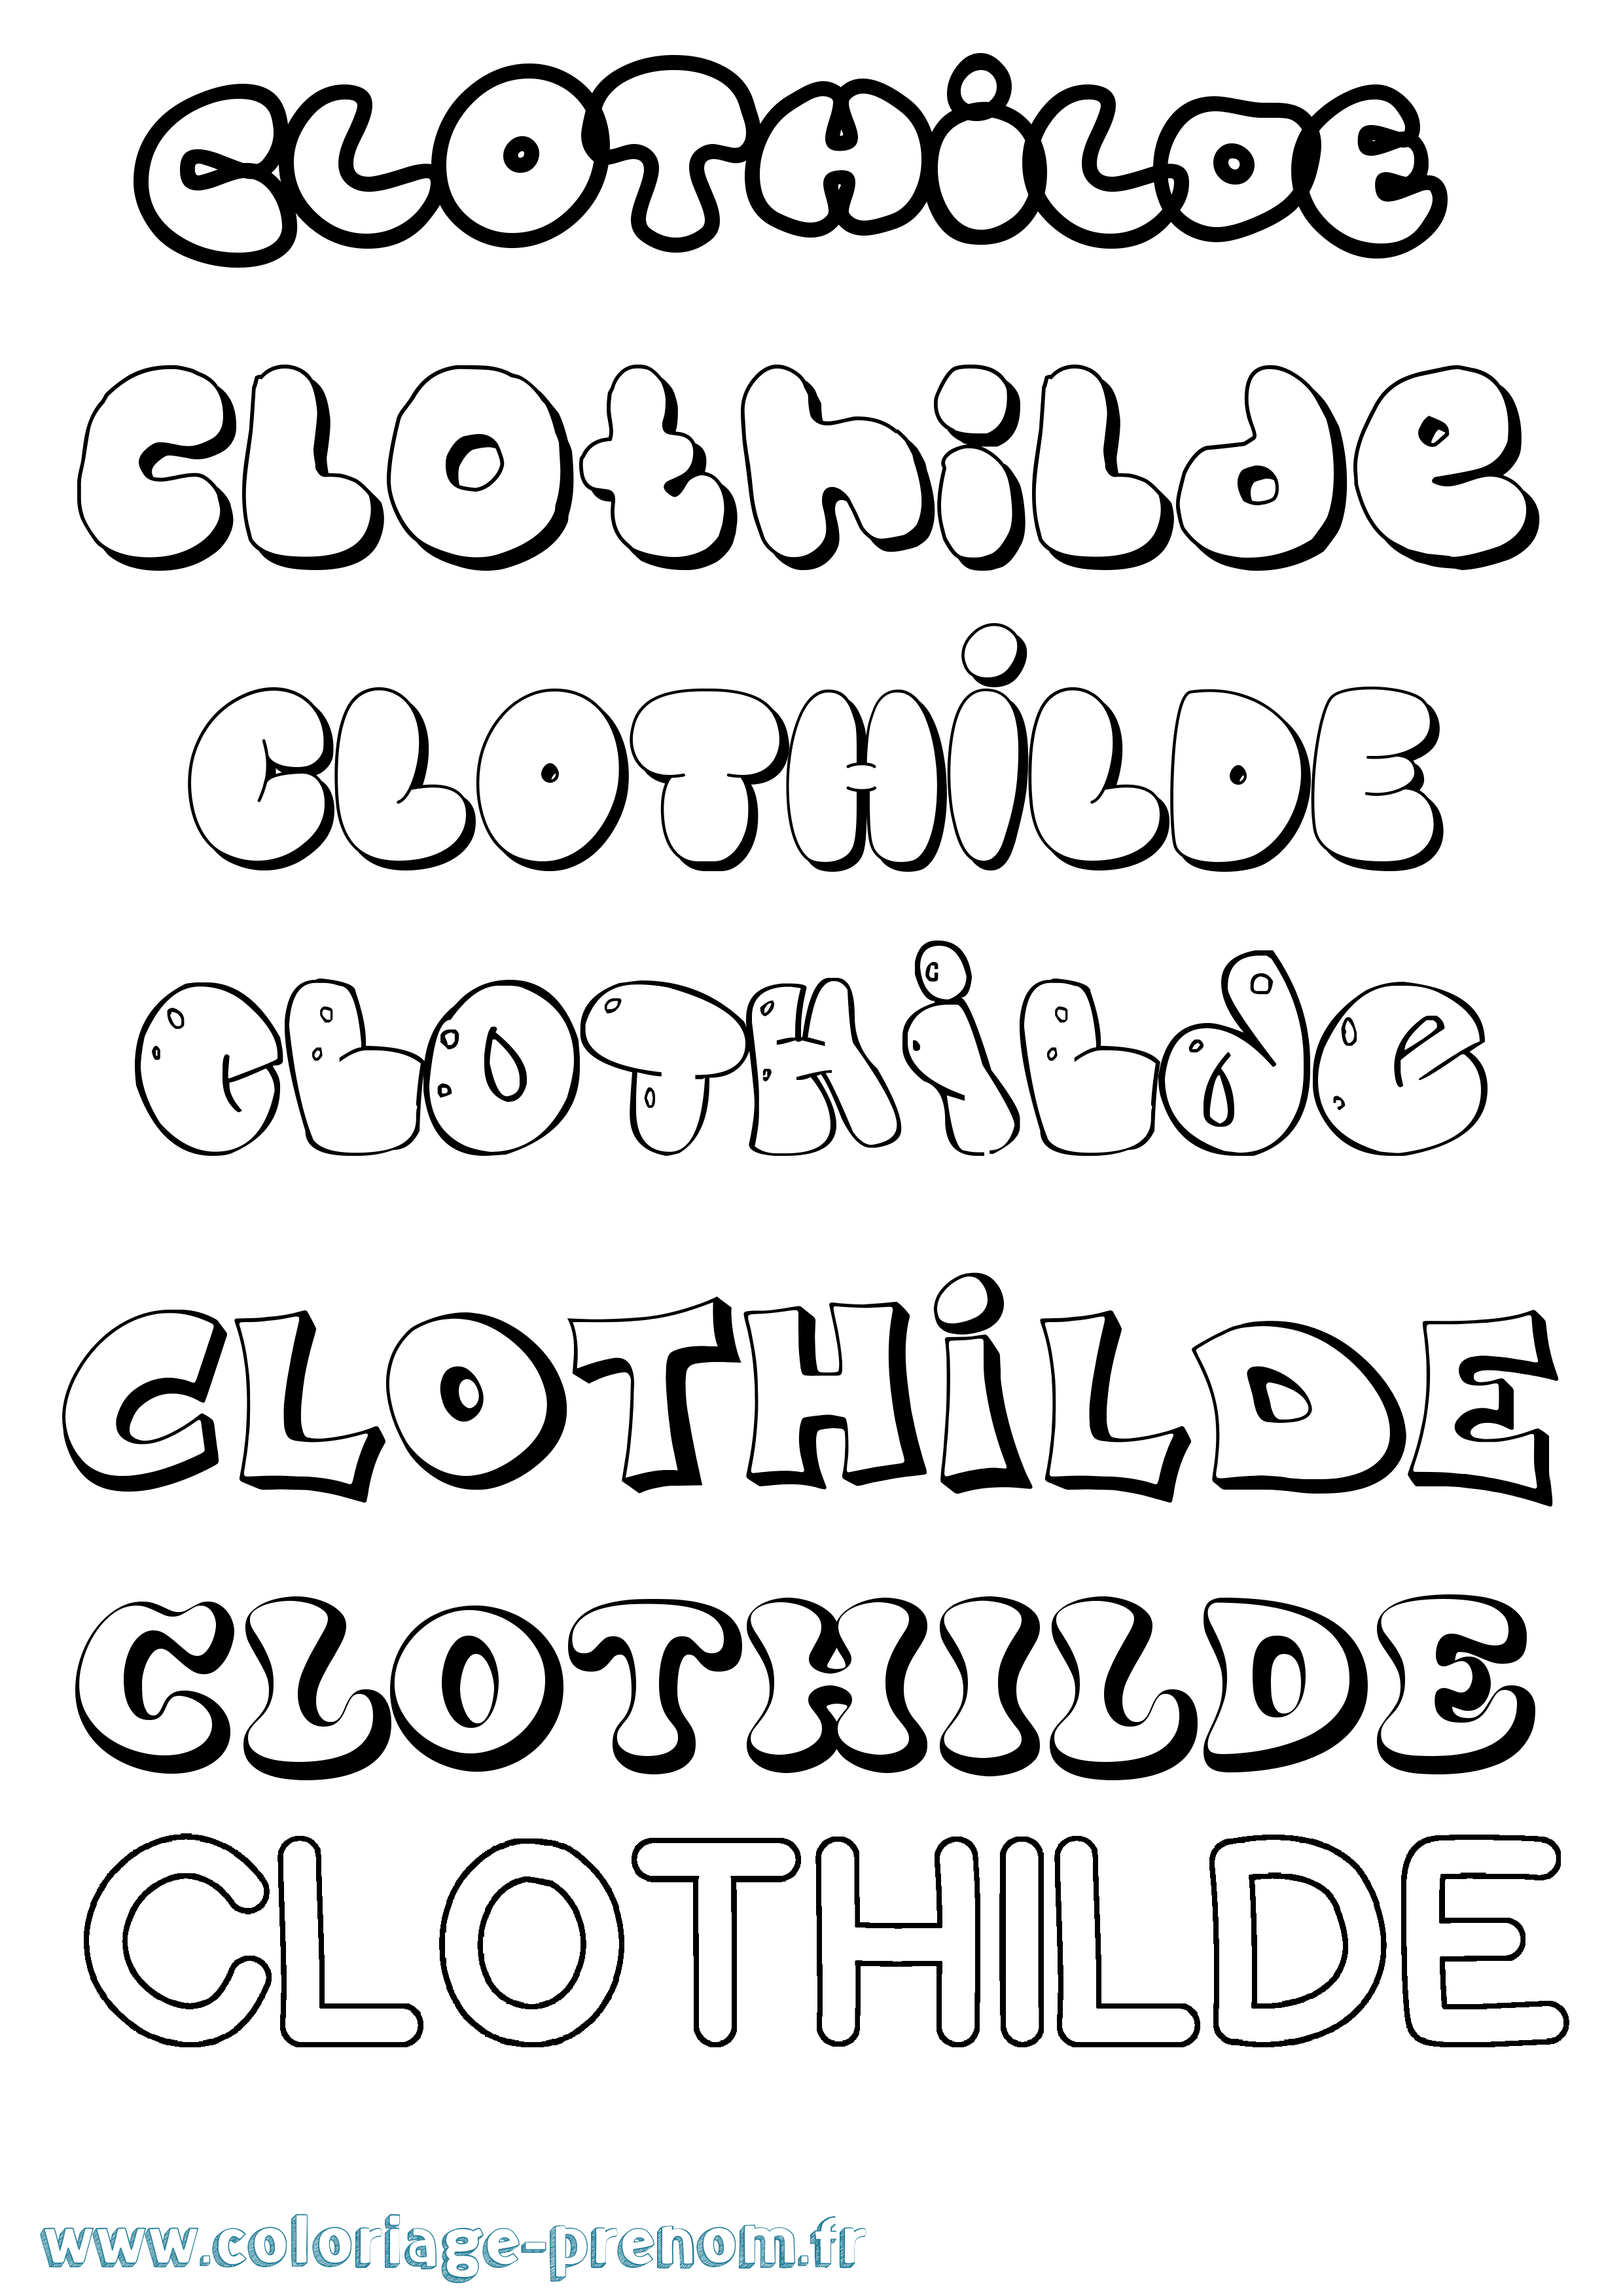 Coloriage prénom Clothilde Bubble